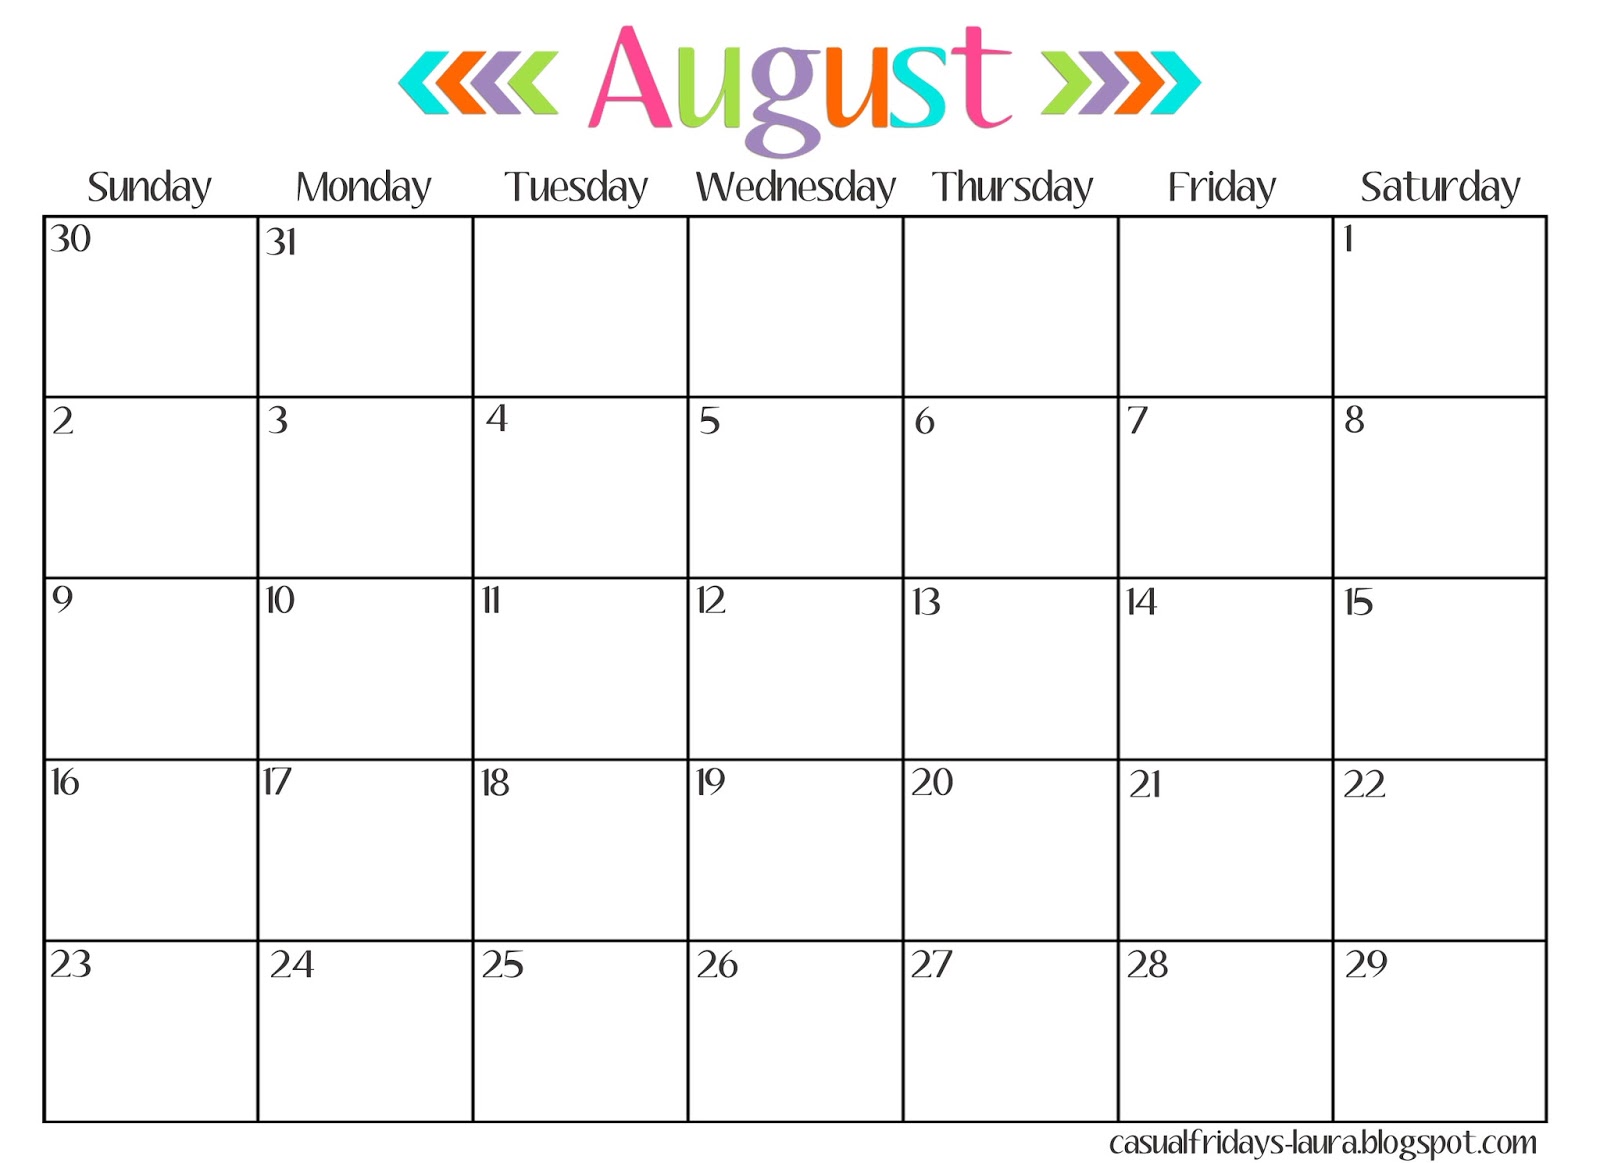 Календарь август 24. Август 2016 календарь. Октябрь 2015 календарь. Август 2017 календарь. Август 2018 календарь.